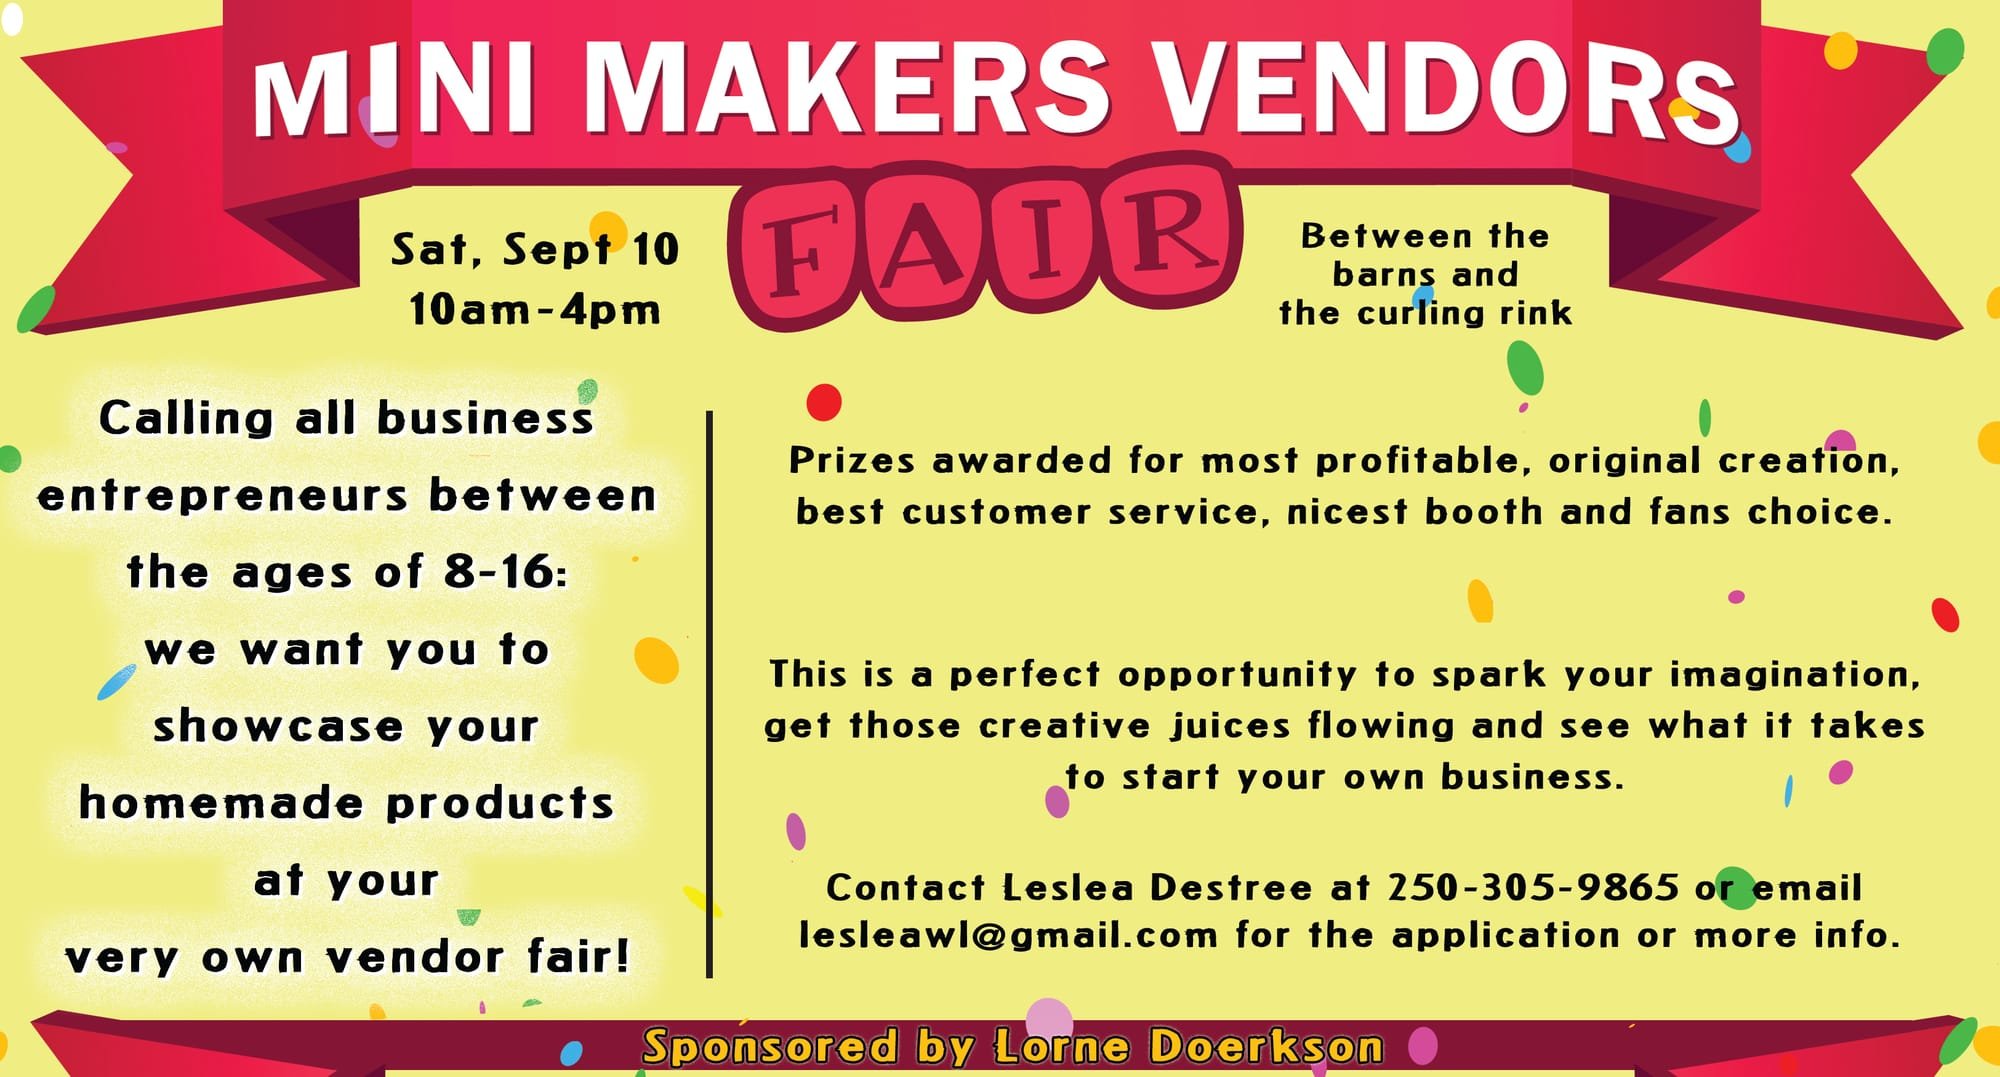 Mini Makers Vendfors Market at the Williams Lake Harvest Fair 2022